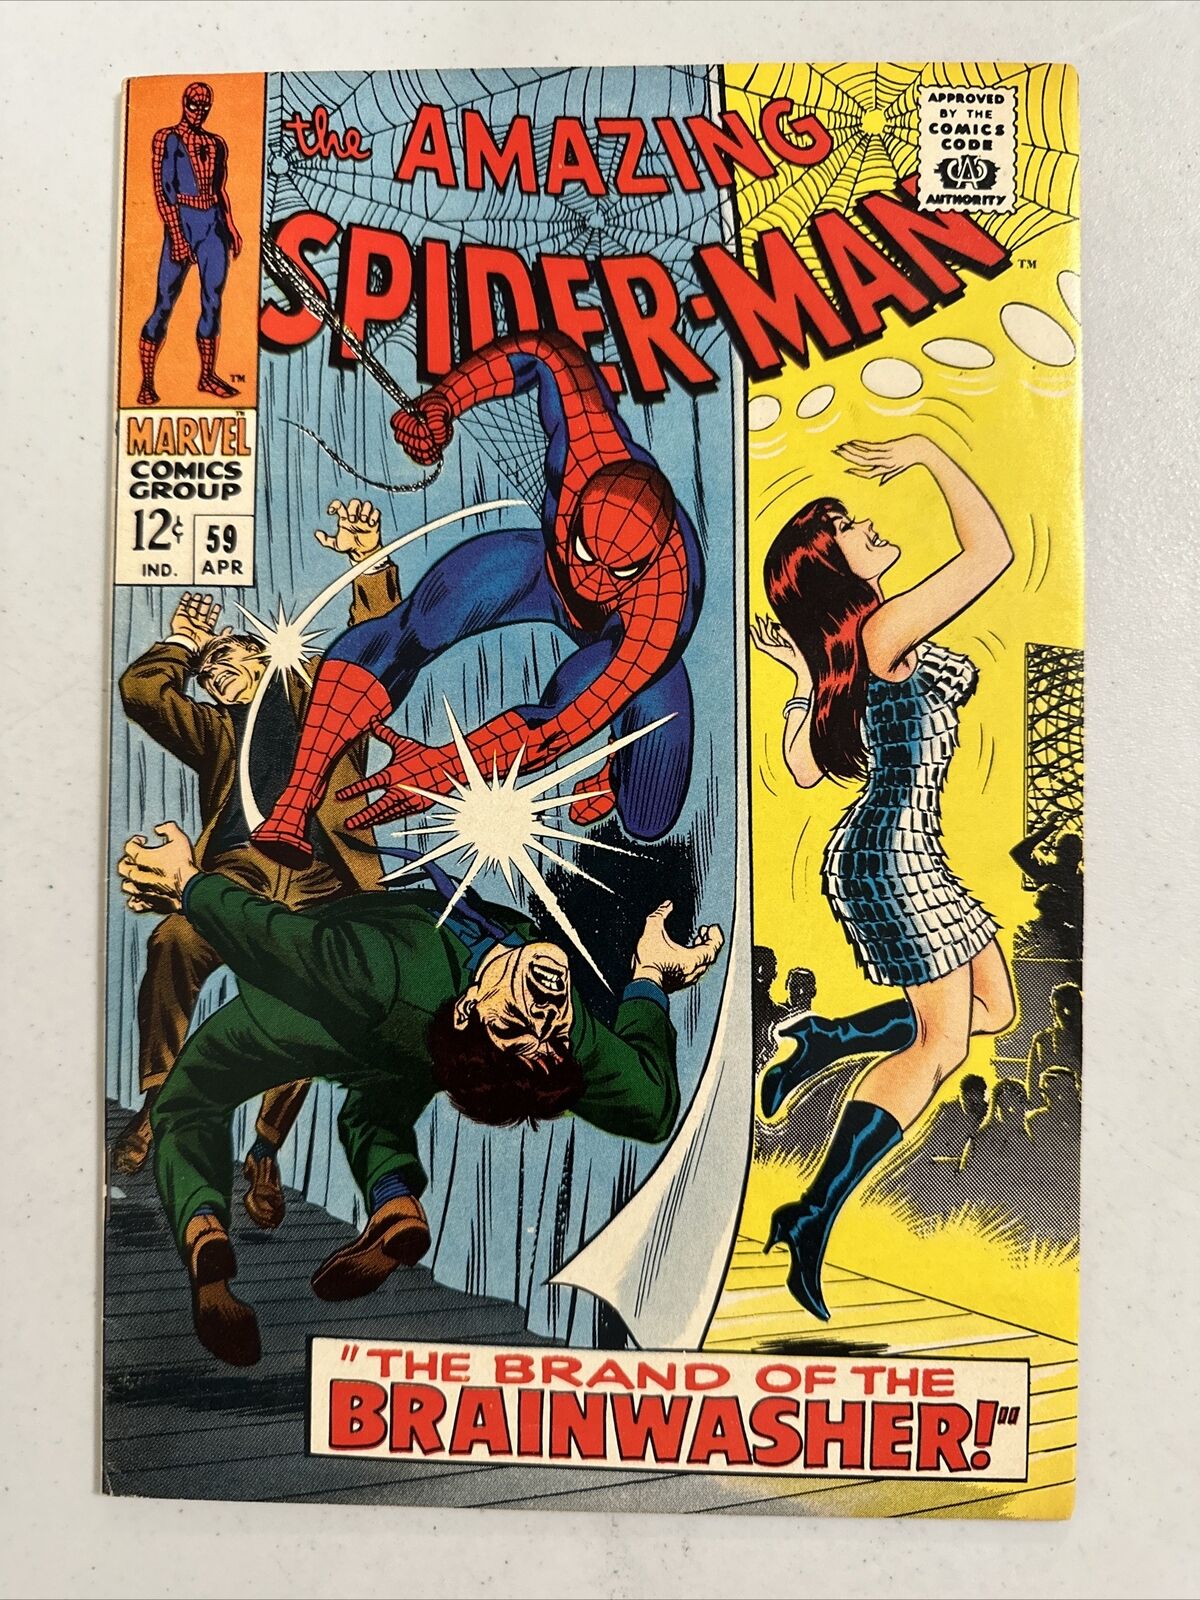 Amazing Spider-Man #59 RARE 1 STAPLE ERROR Marvel Comics MID GRADE